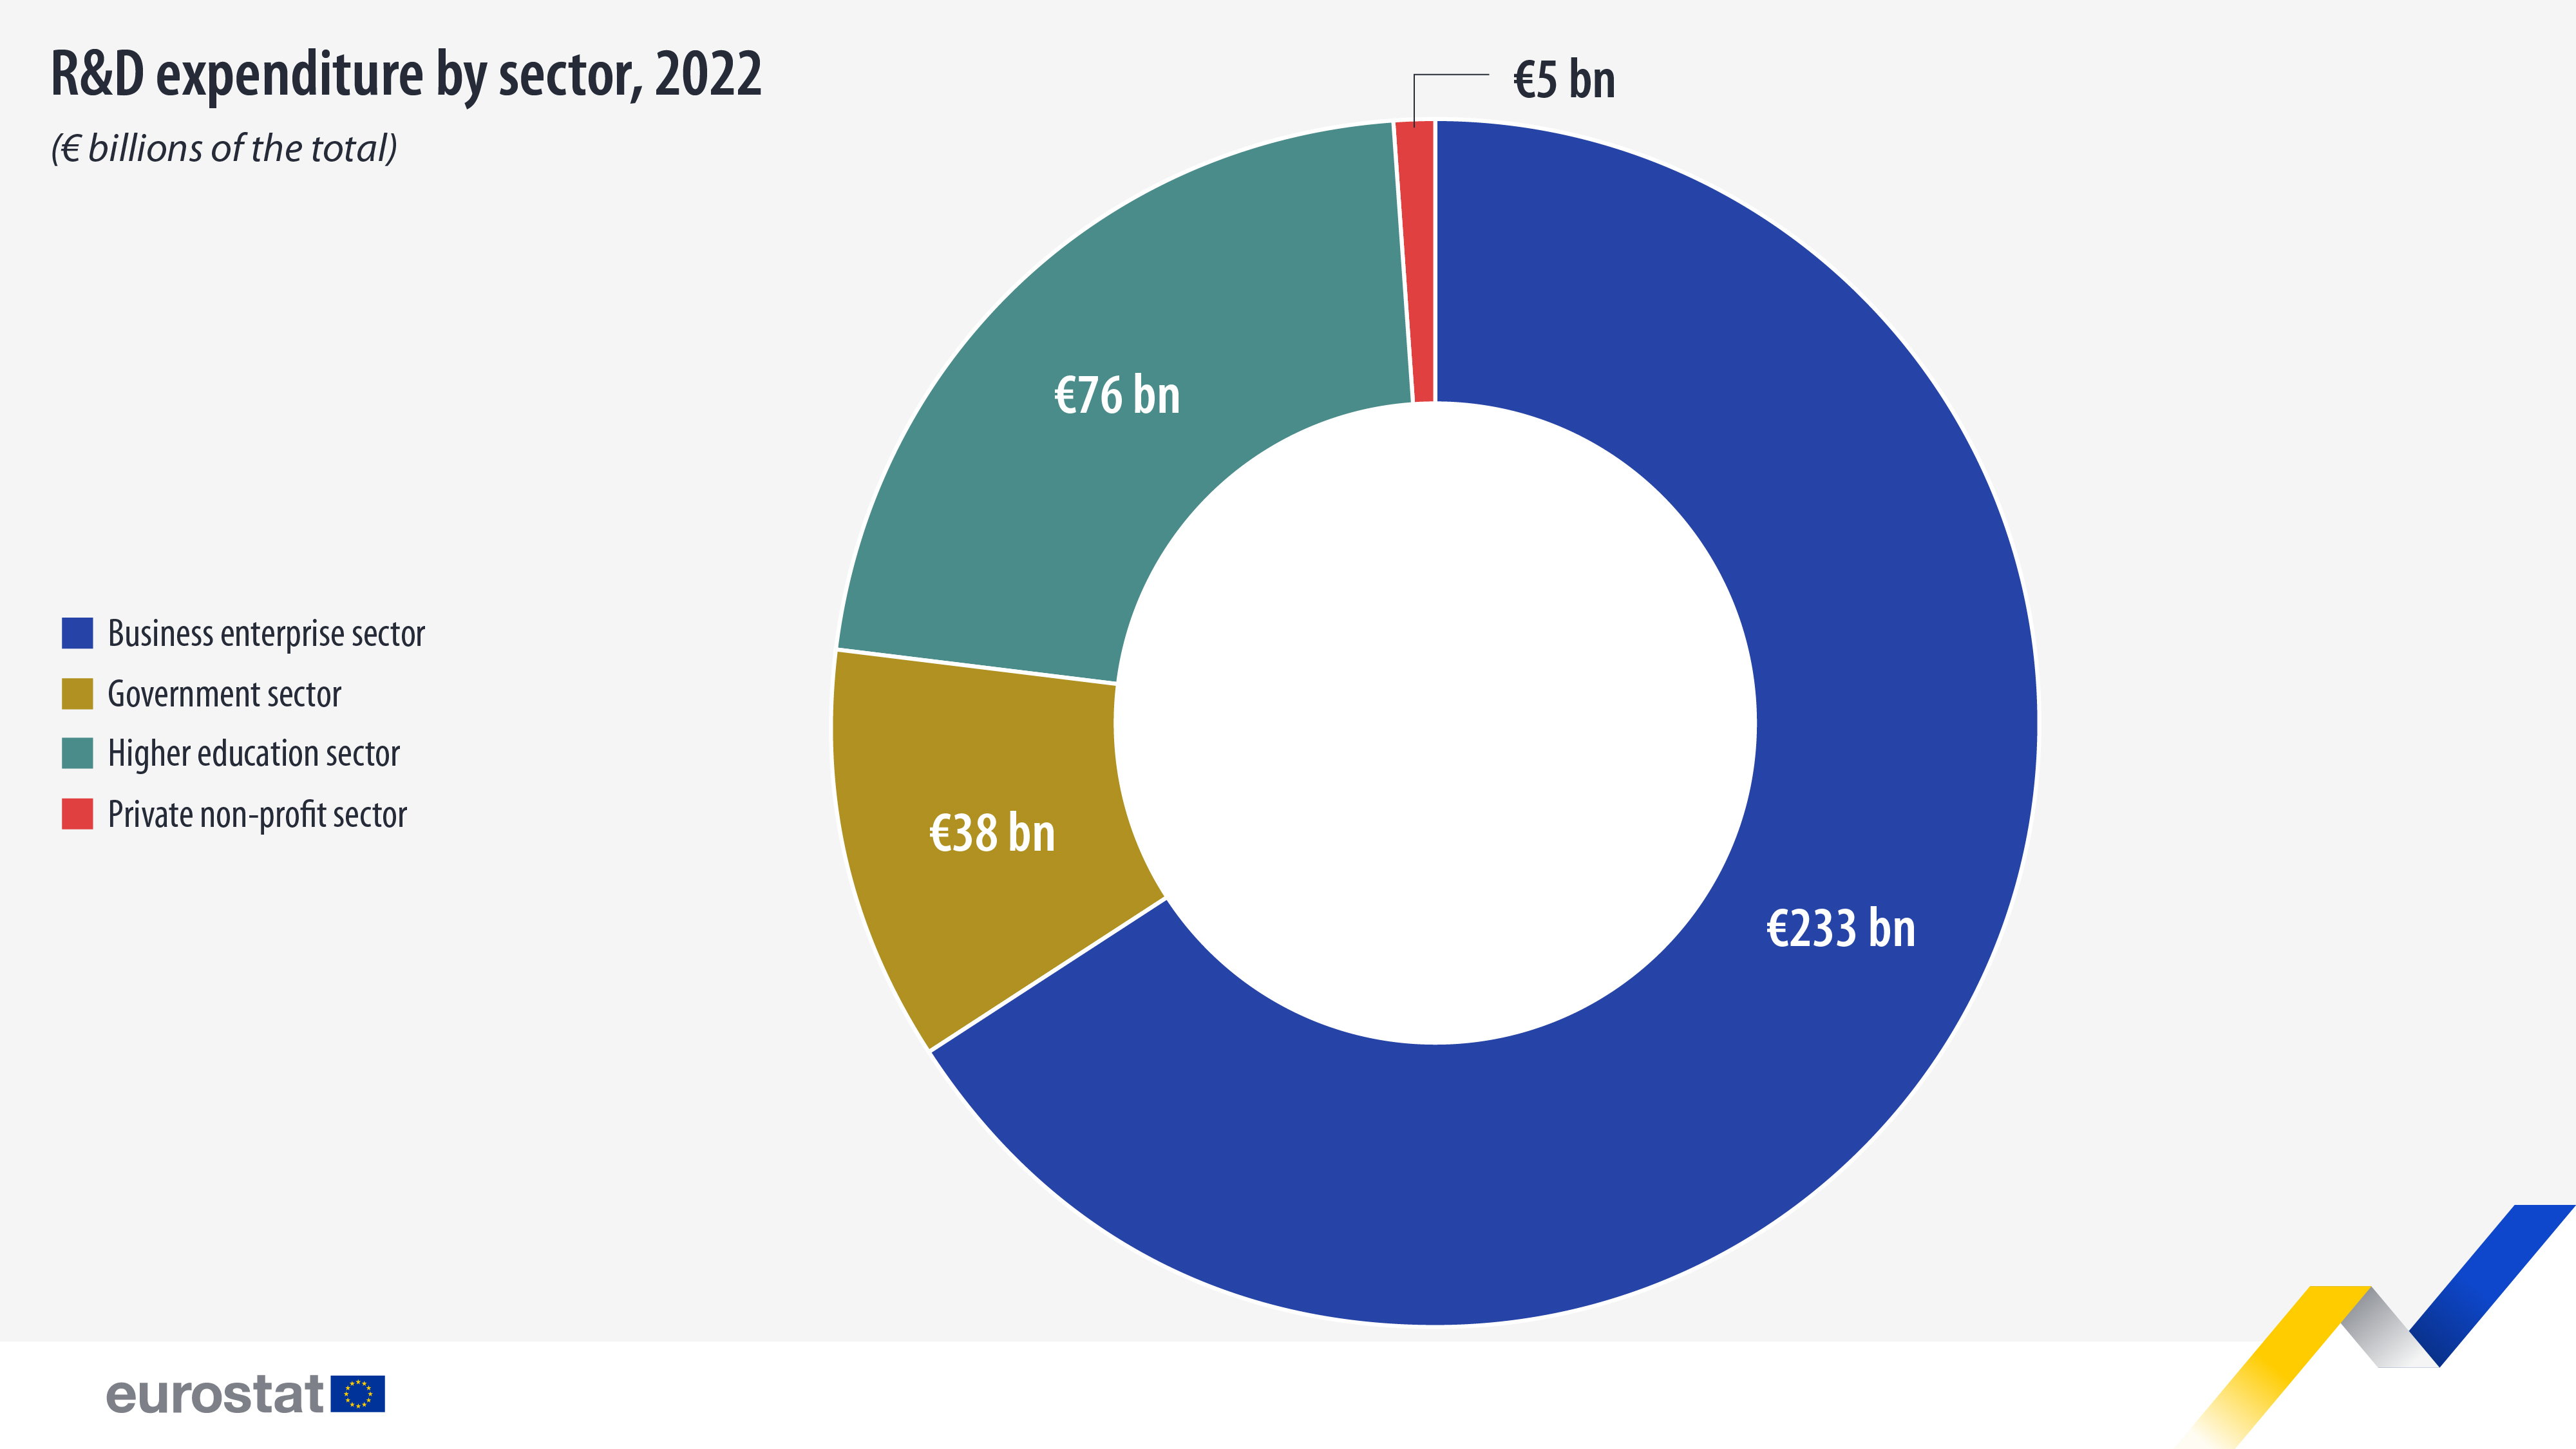 Izdevumi pētniecībai un attīstībai pa nozarēm, 2022, 1 miljards eiro